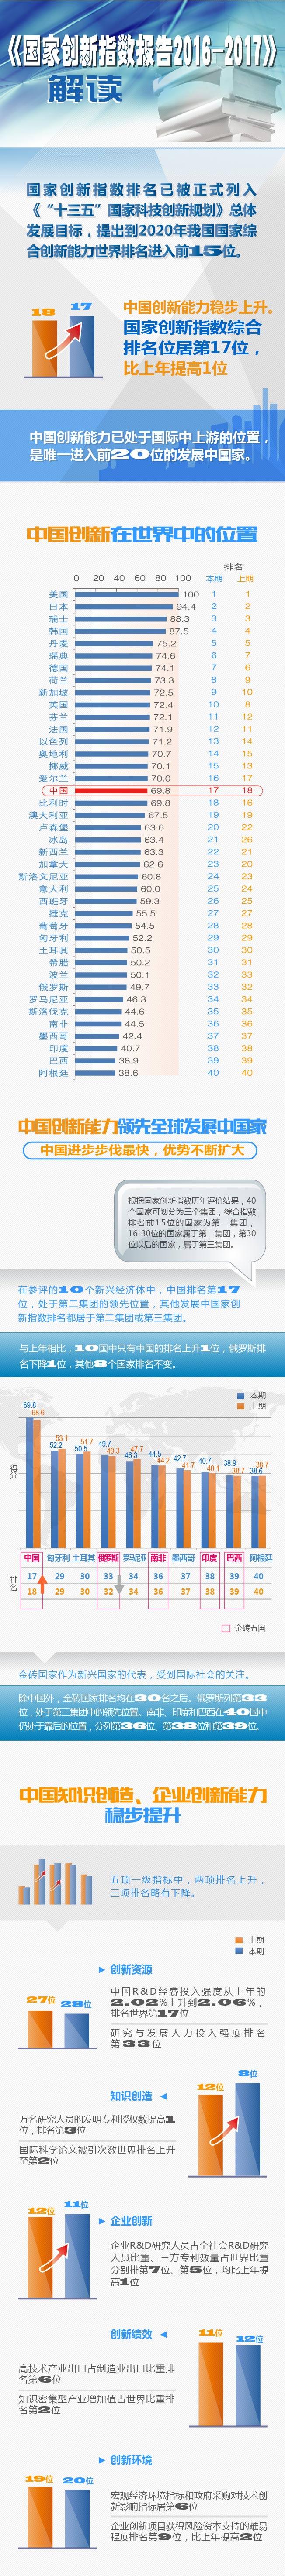 中国国家创新指数排名提升至世界第17位